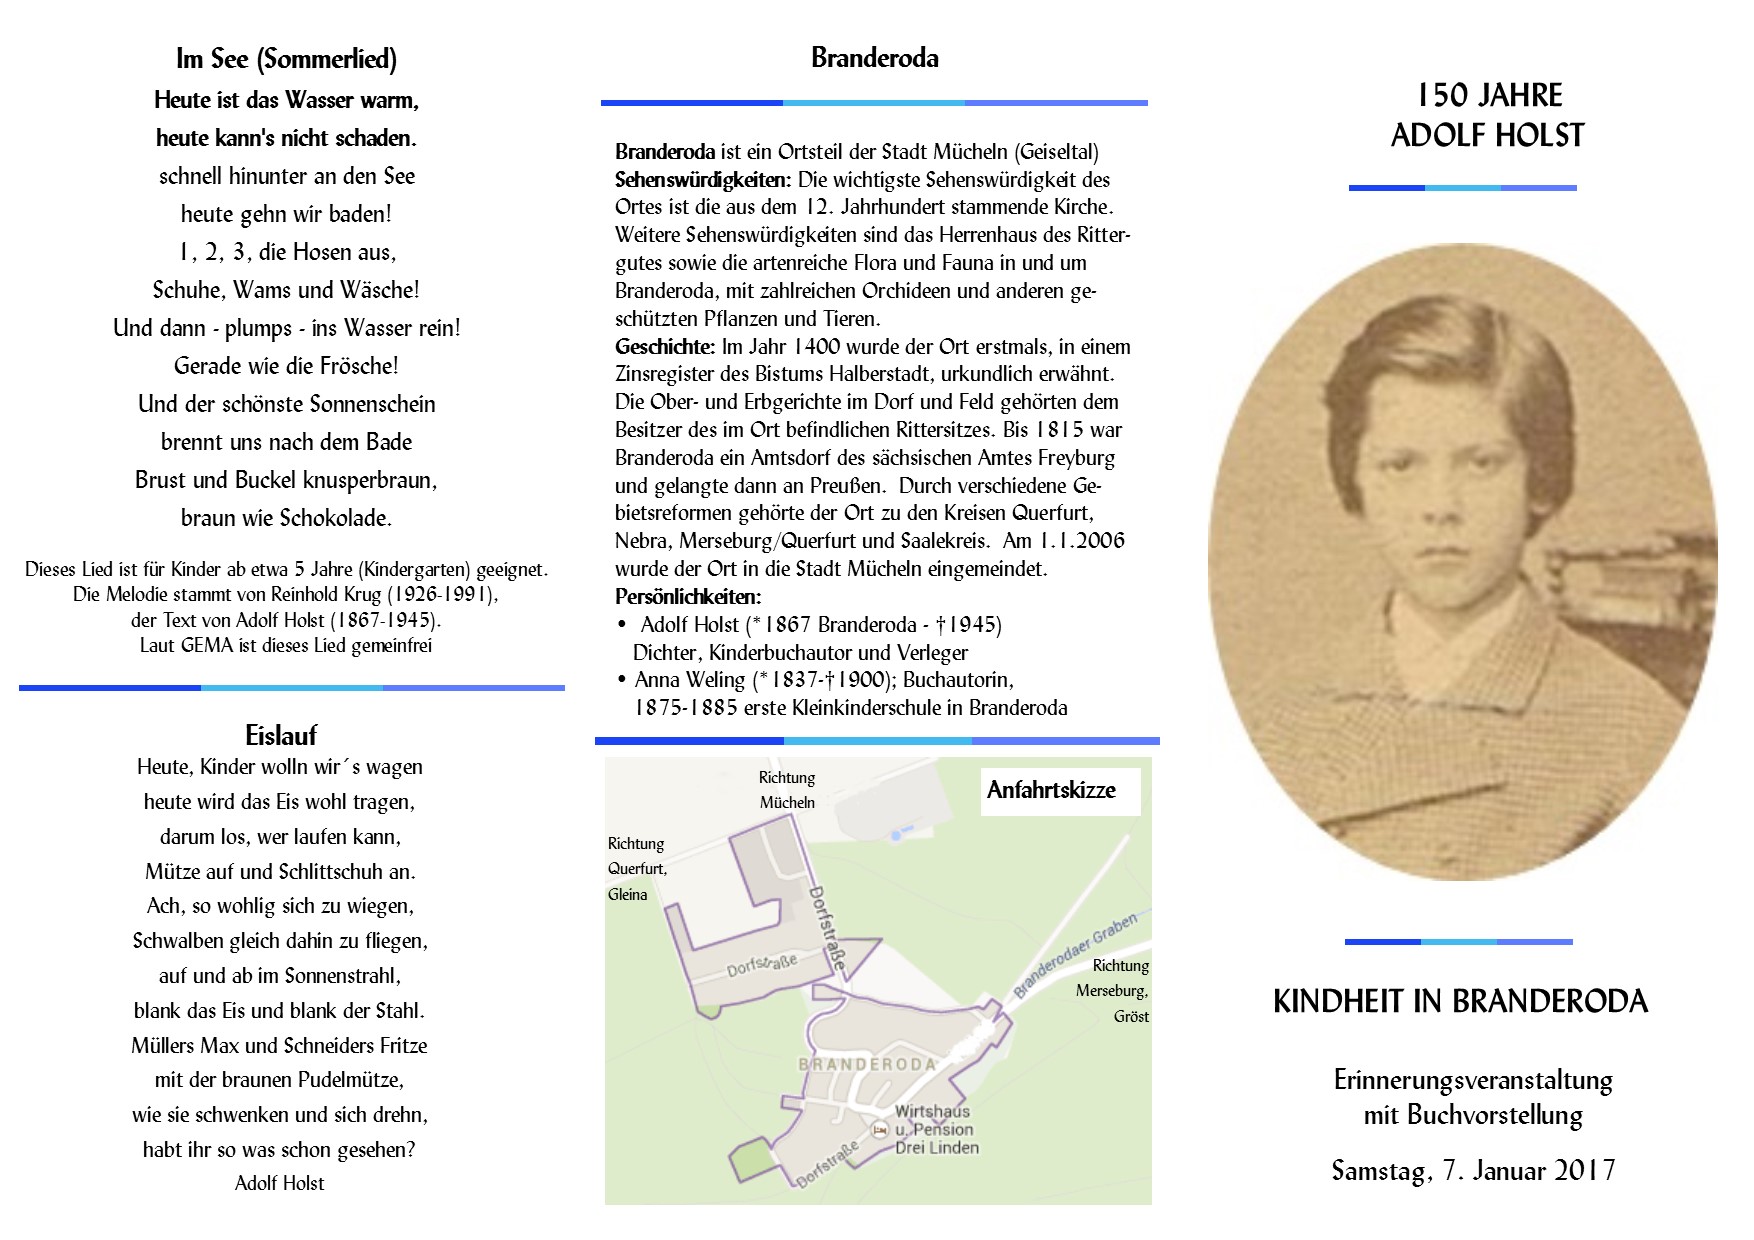 Hinweis-Flyer und Einladungs zur Adolf Holst Veranstaltung am 7. Januar 2017 in Branderoda - Seite 1